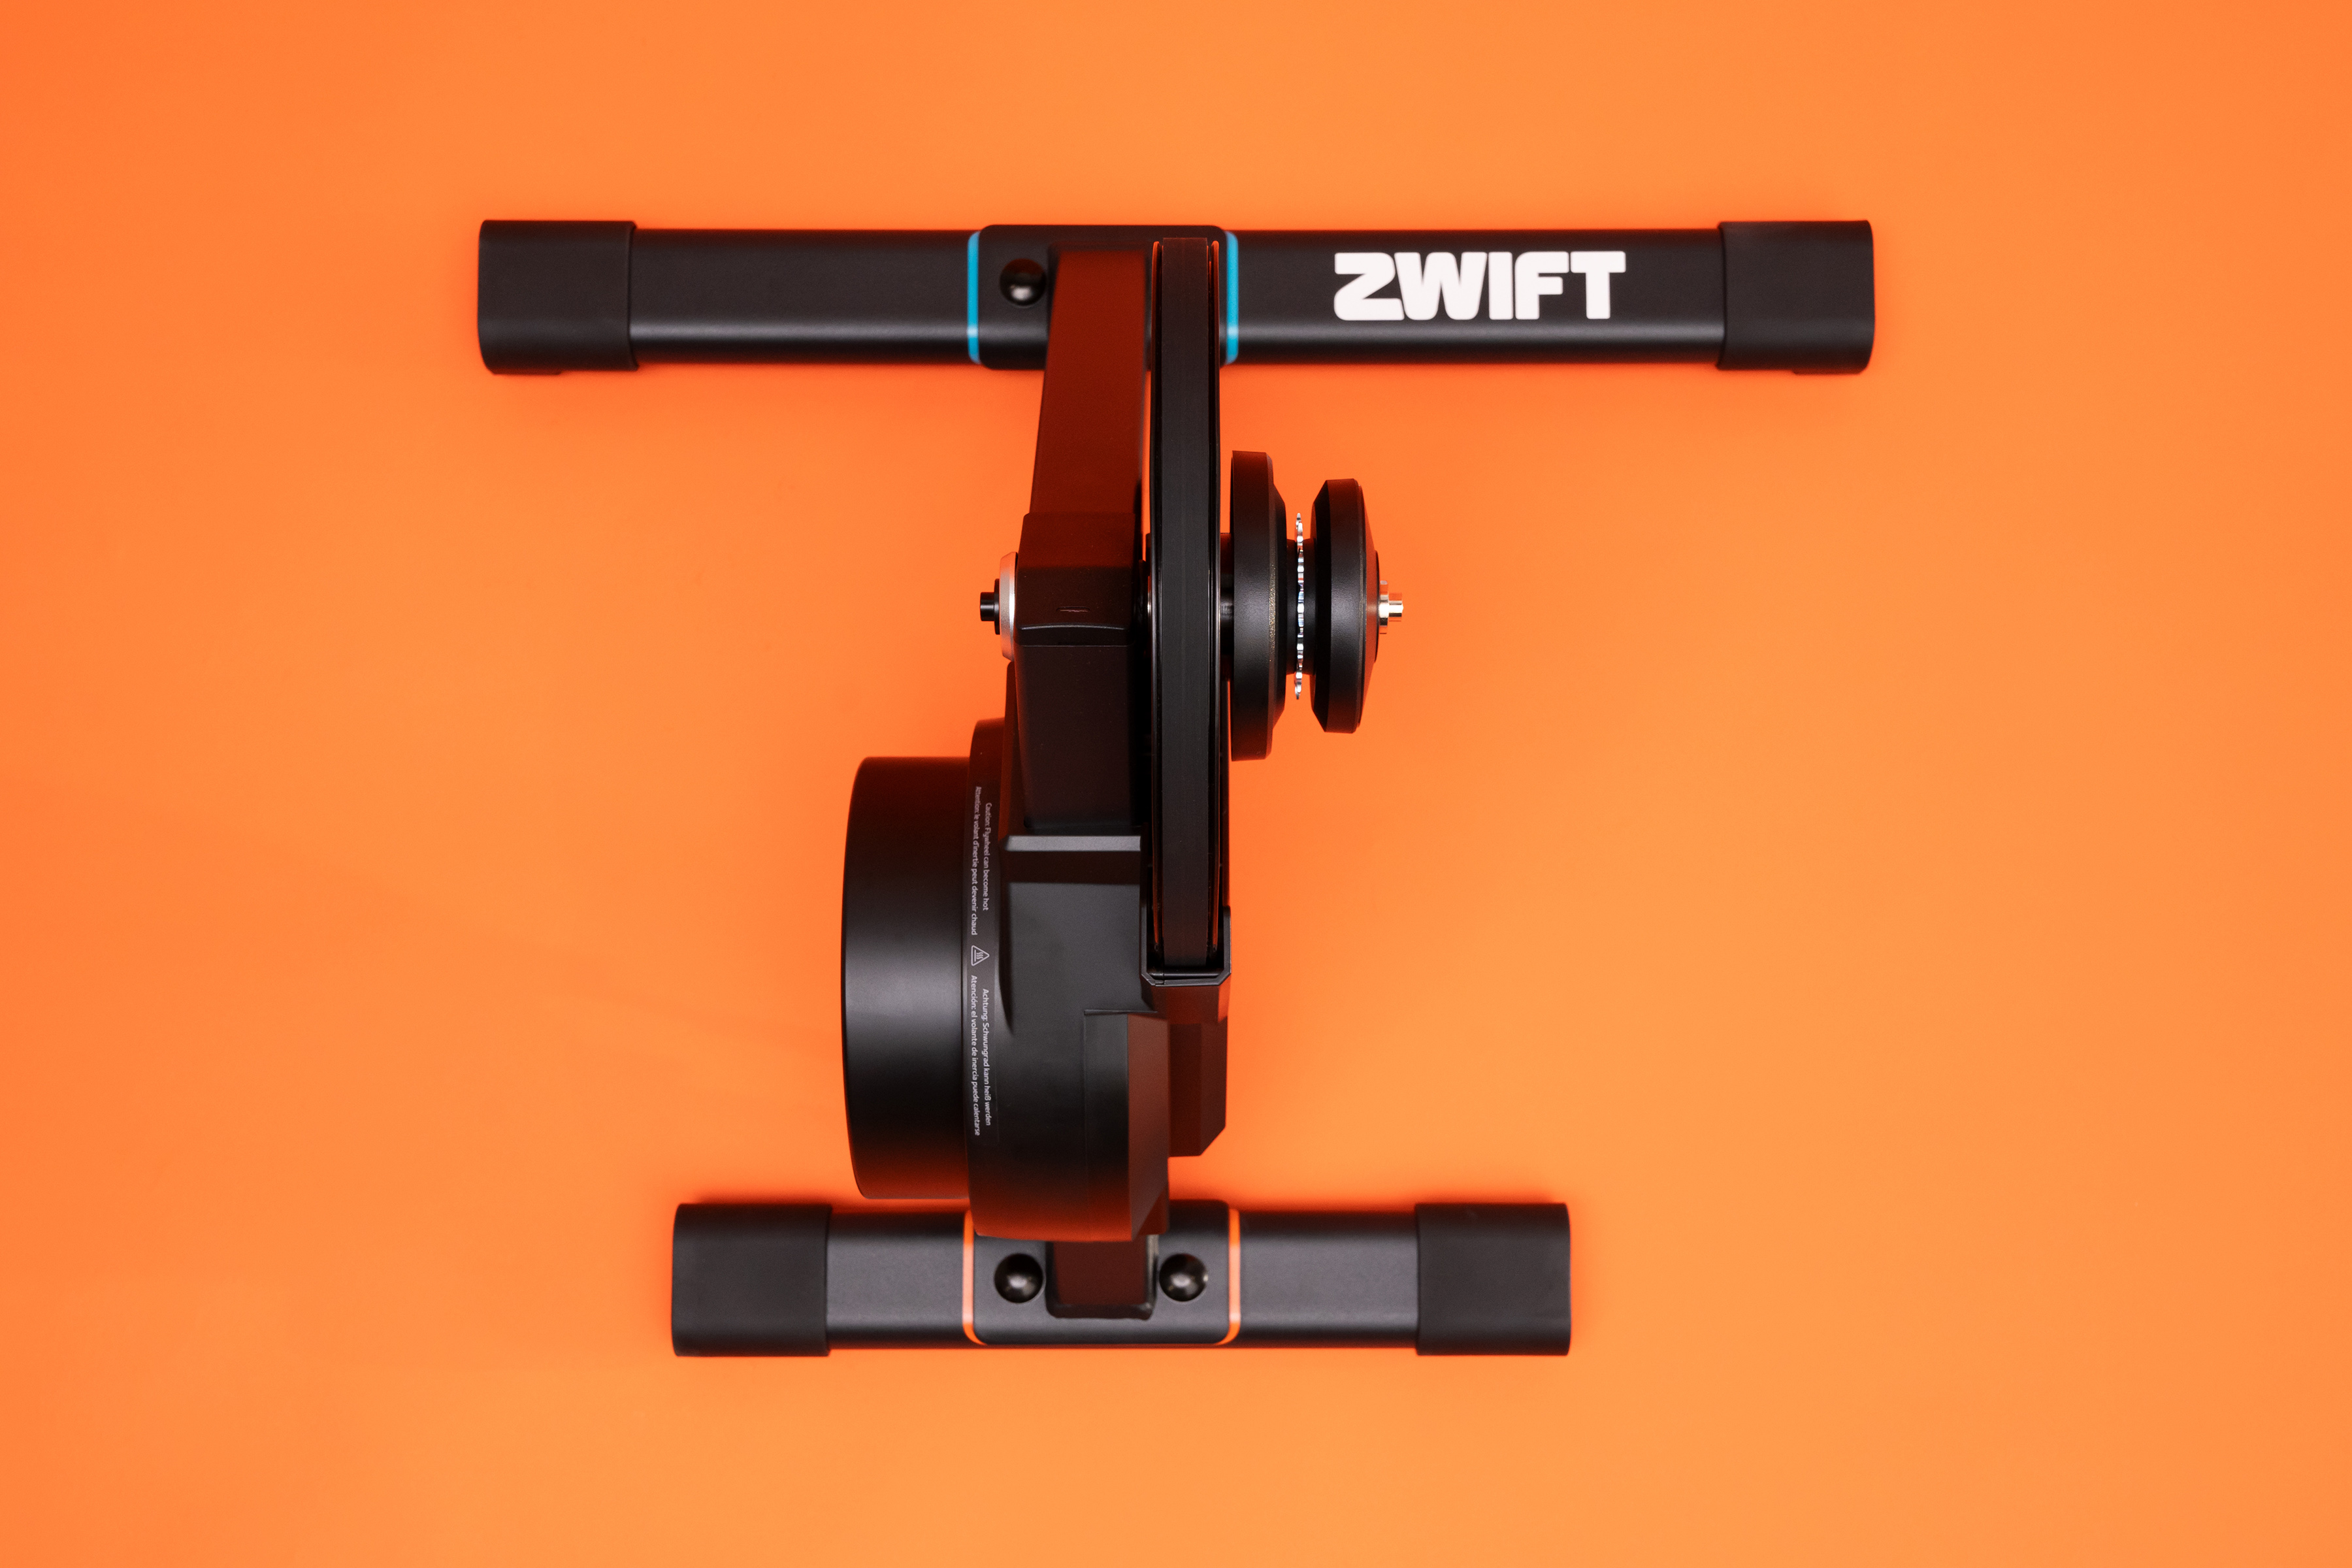 Neuer Zwift Hub One Smarttrainer ohne Antriebs-Kassette - Rennrad-News